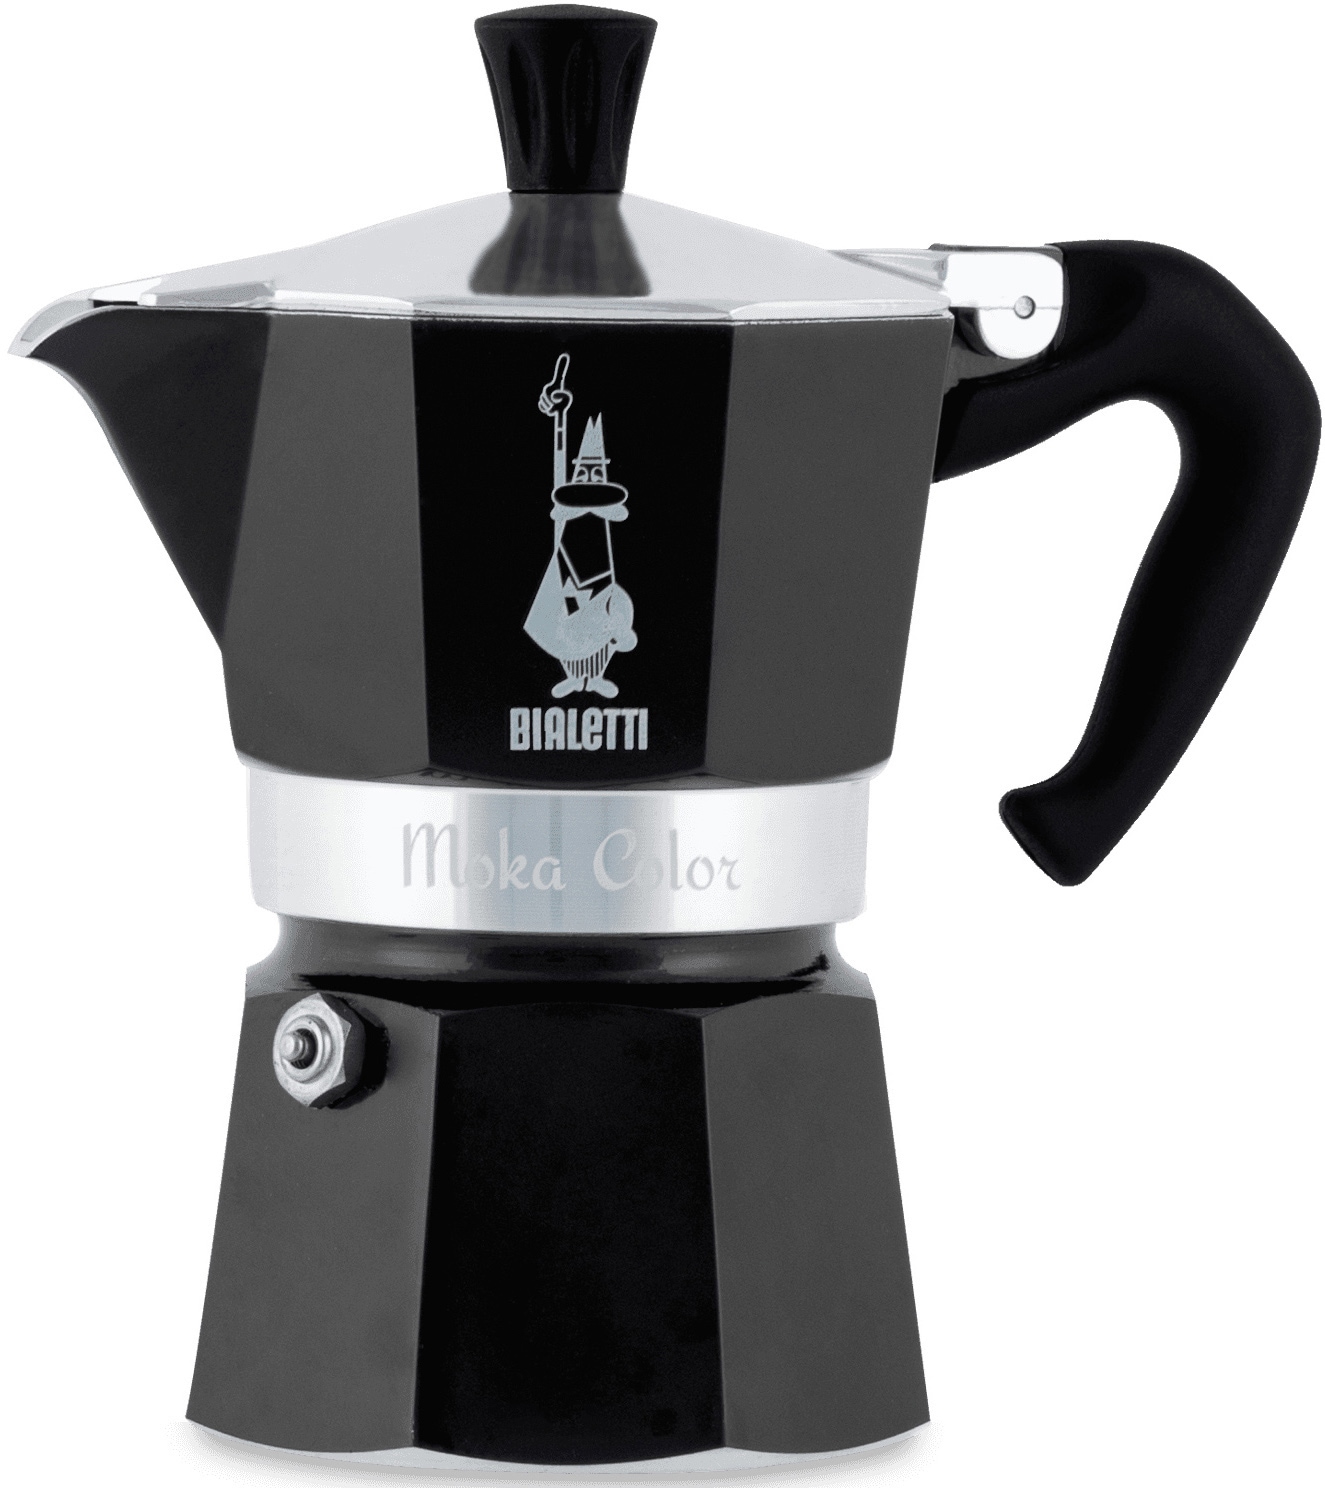 BIALETTI Espressokocher »Moka Express«, 0,06 l Kaffeekanne, Aluminium, in hochwertiger Lackierung, 1 Tasse